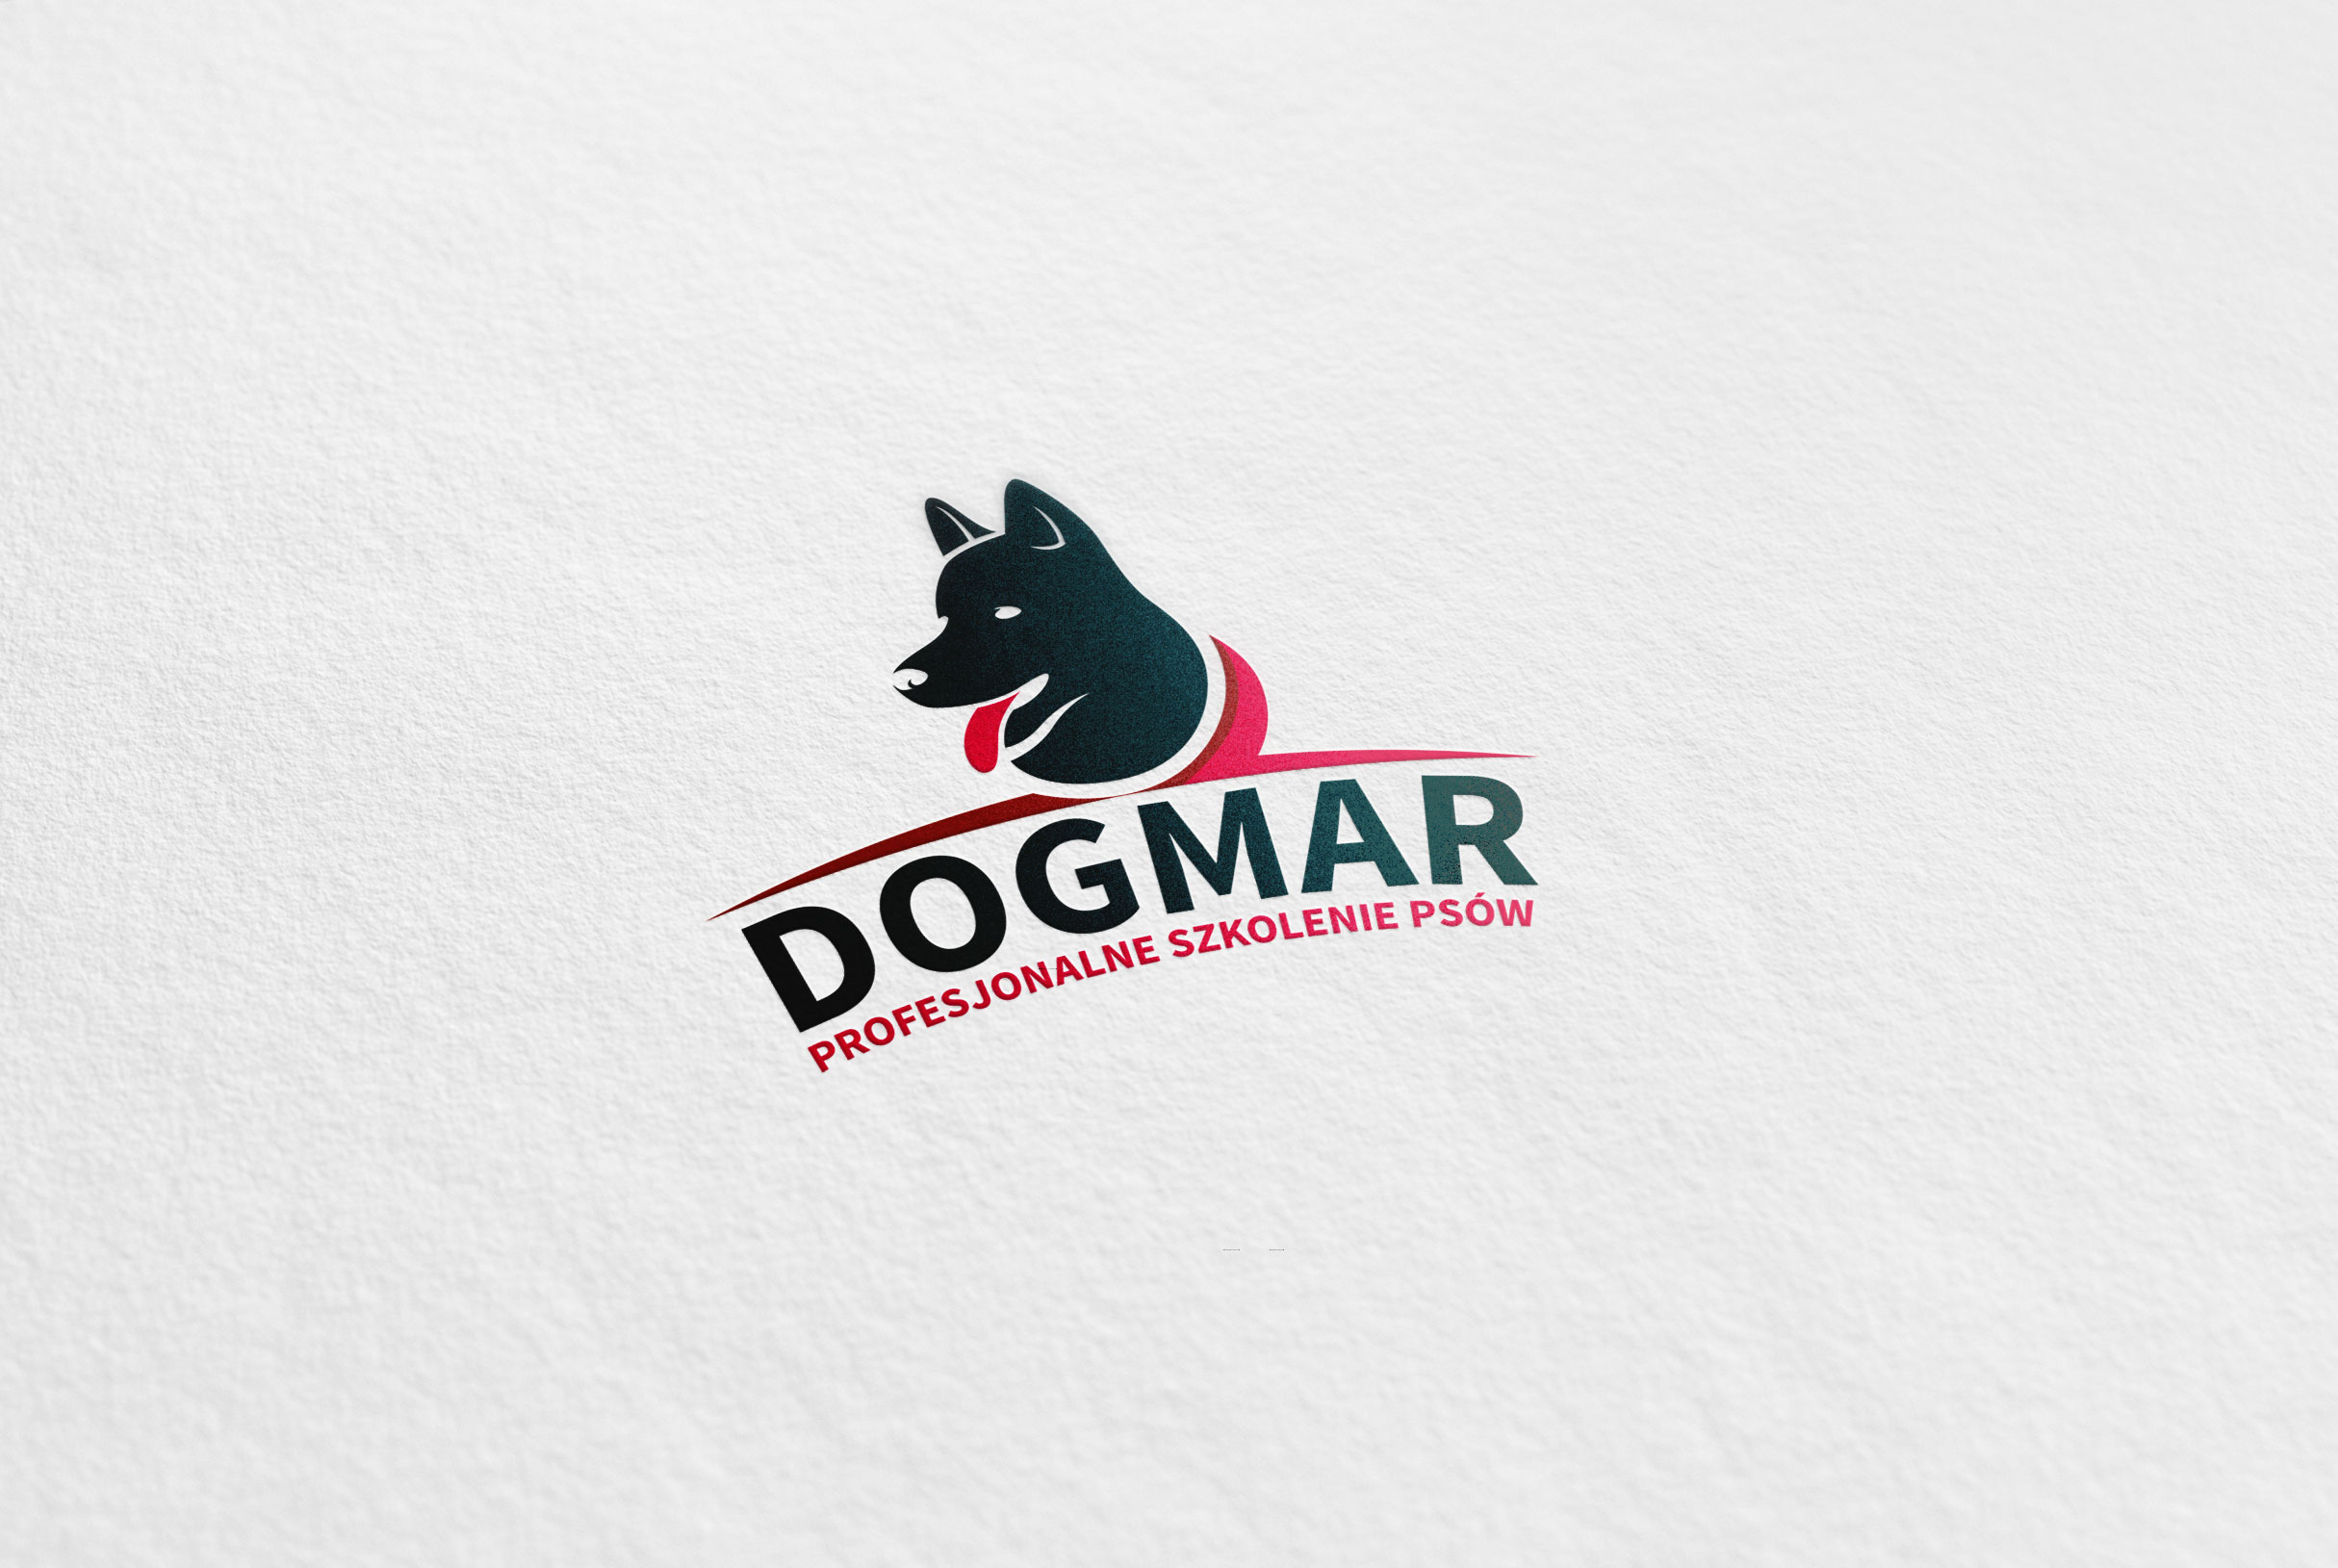 Dogmar - zdjęcie 2